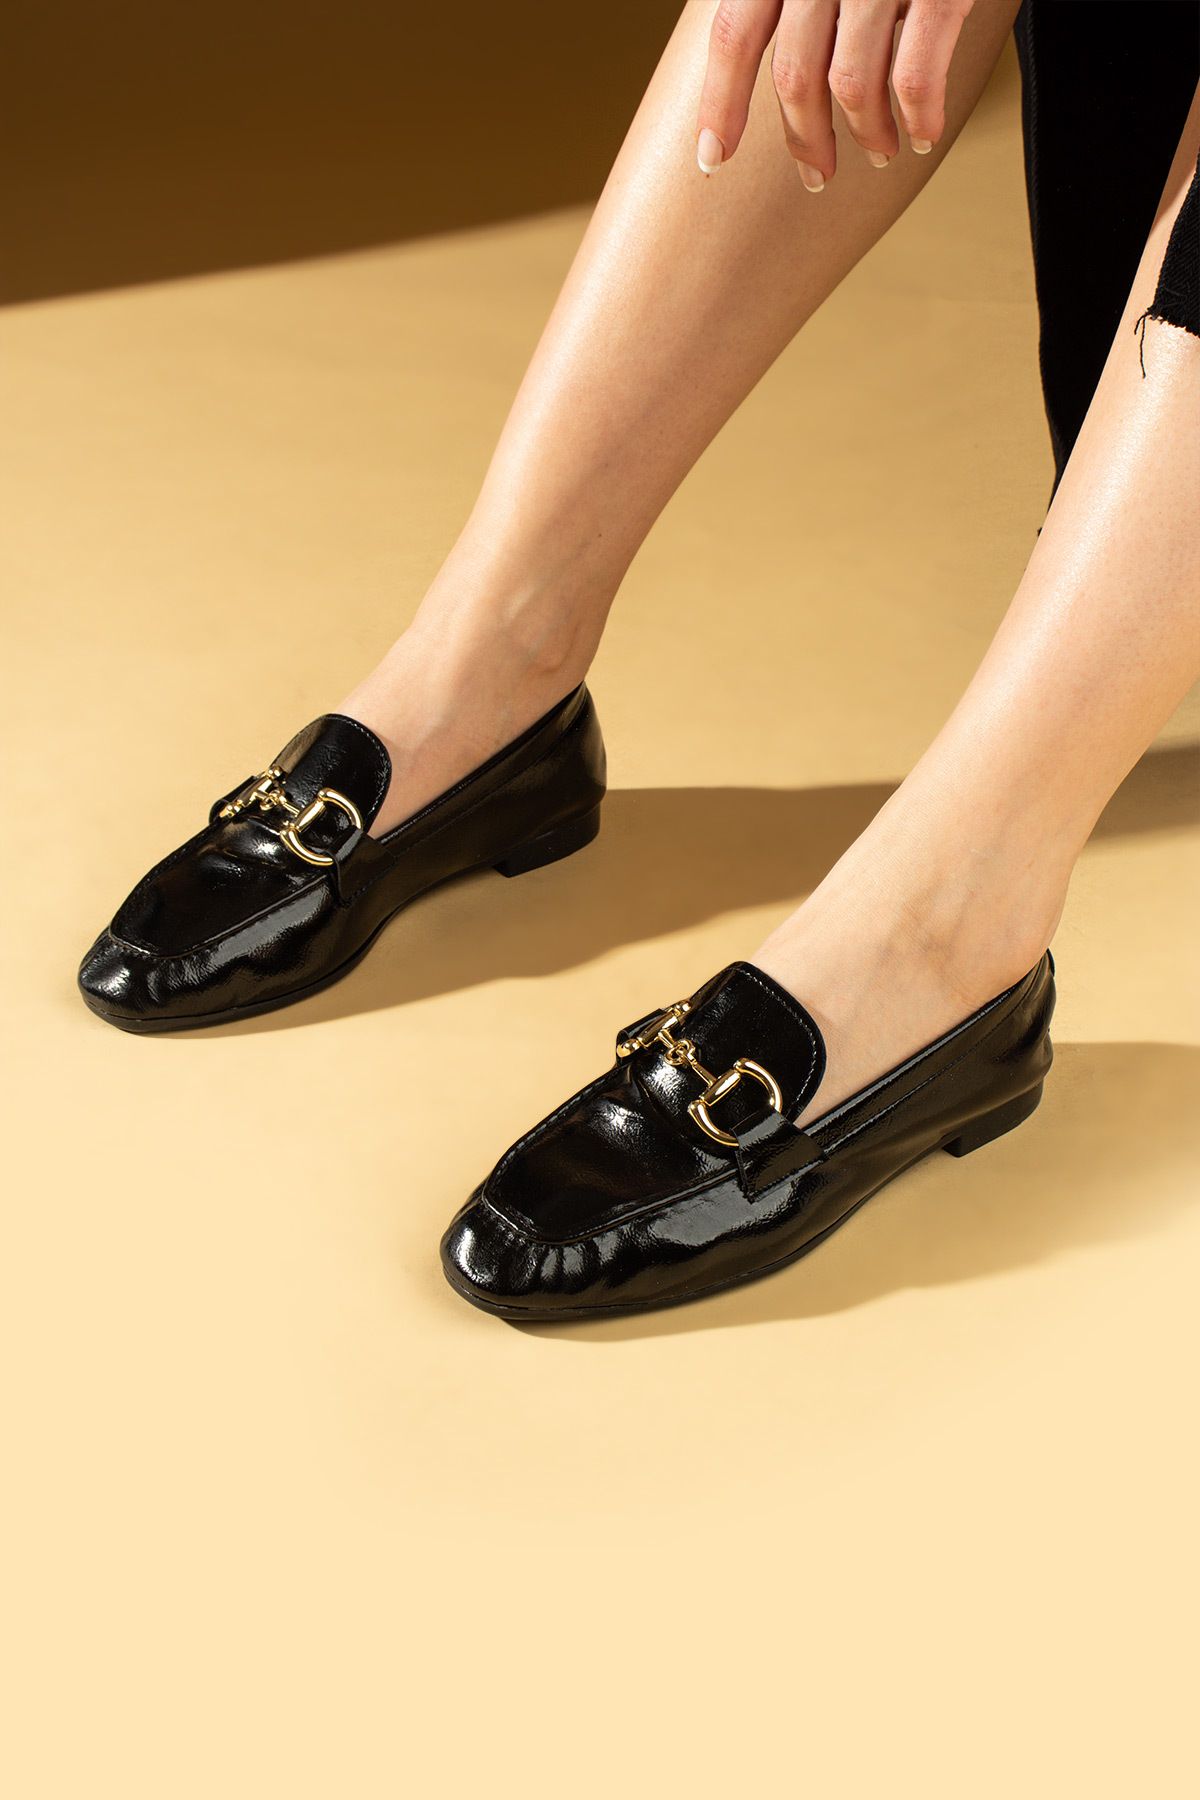 Pembe Potin Kadın Babet Siyah Baskı Tokalı Hafif Rahat Taban Şık Günlük Ayakkabı